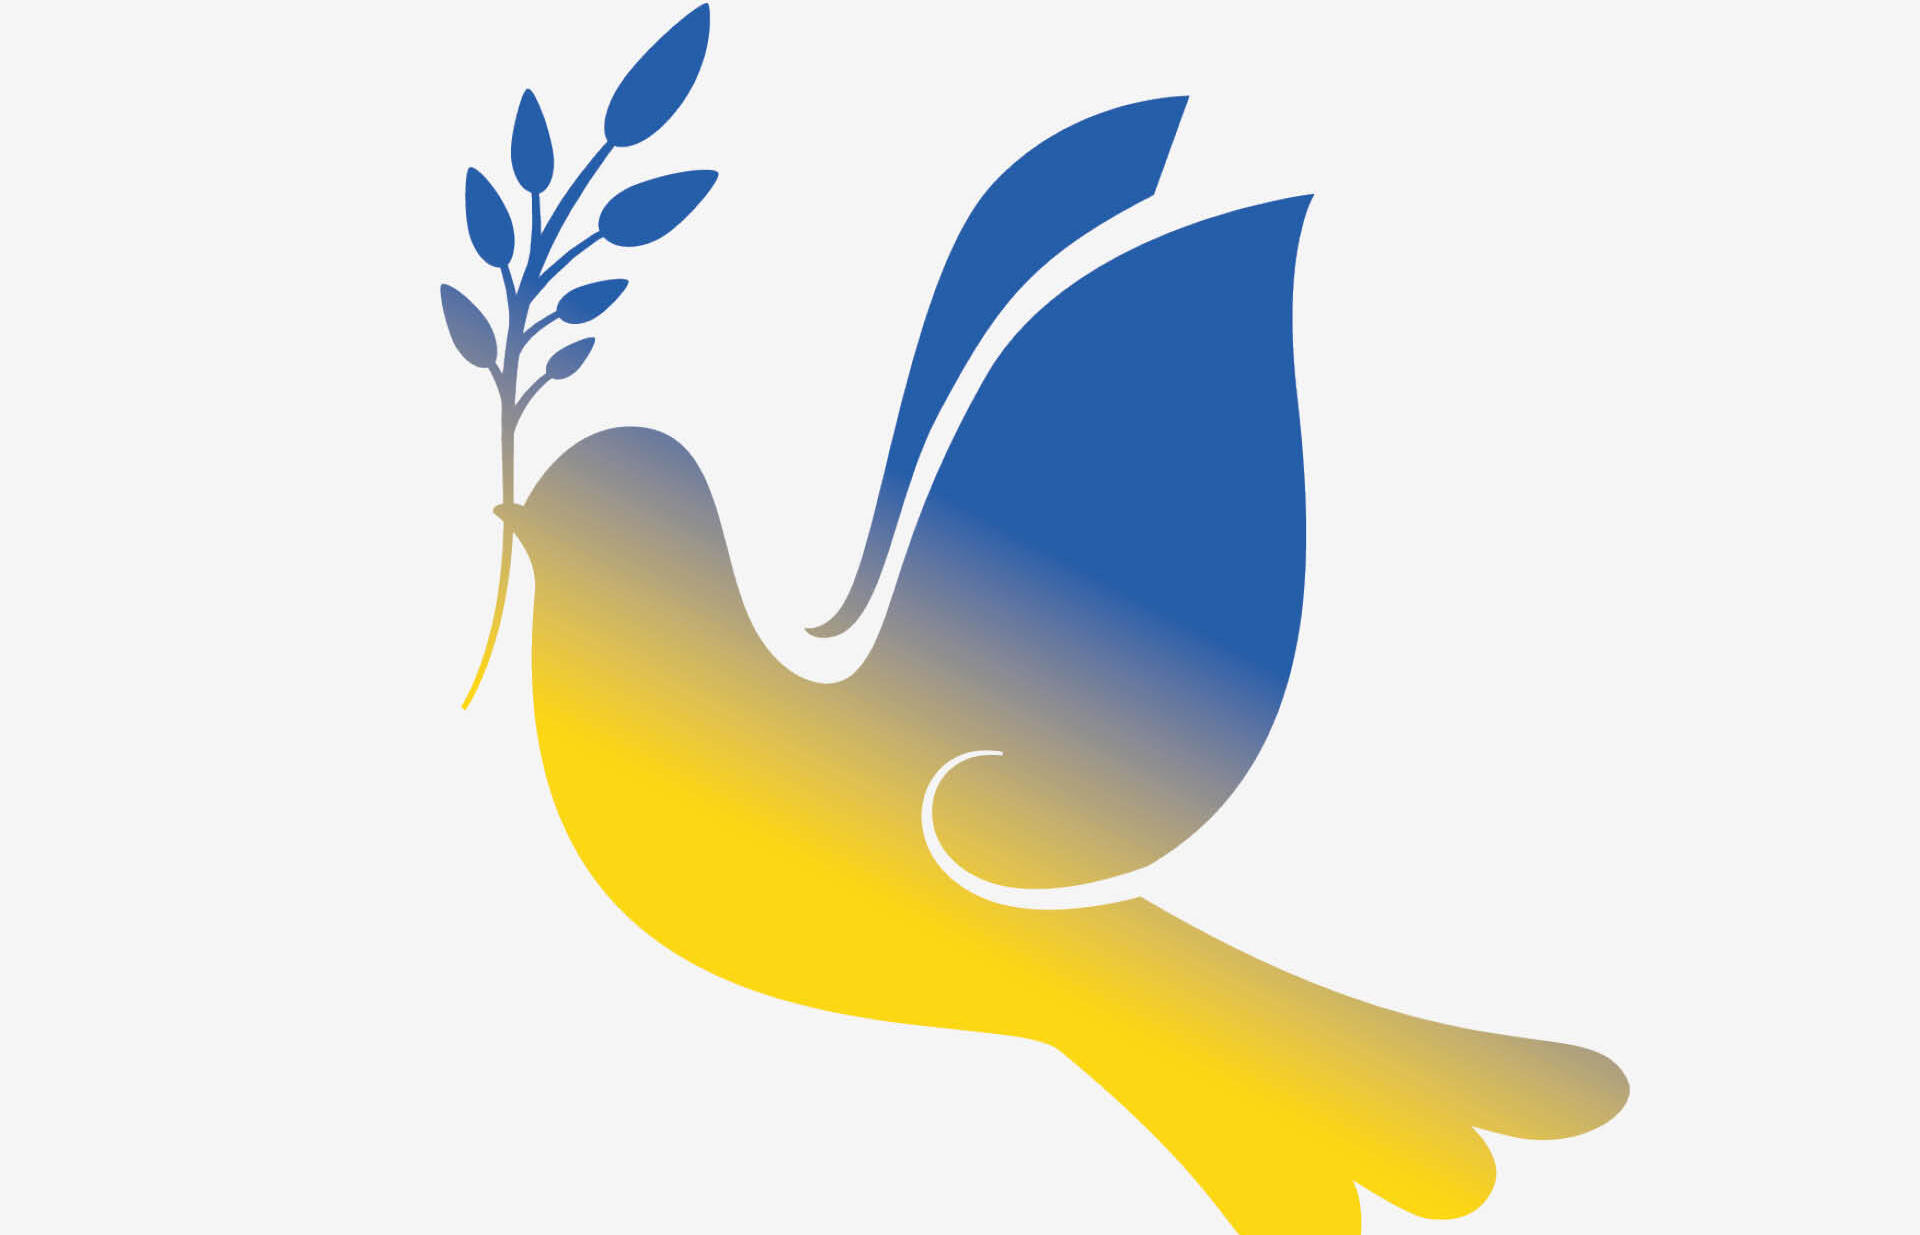 Peace dove in the colours of Ukraine